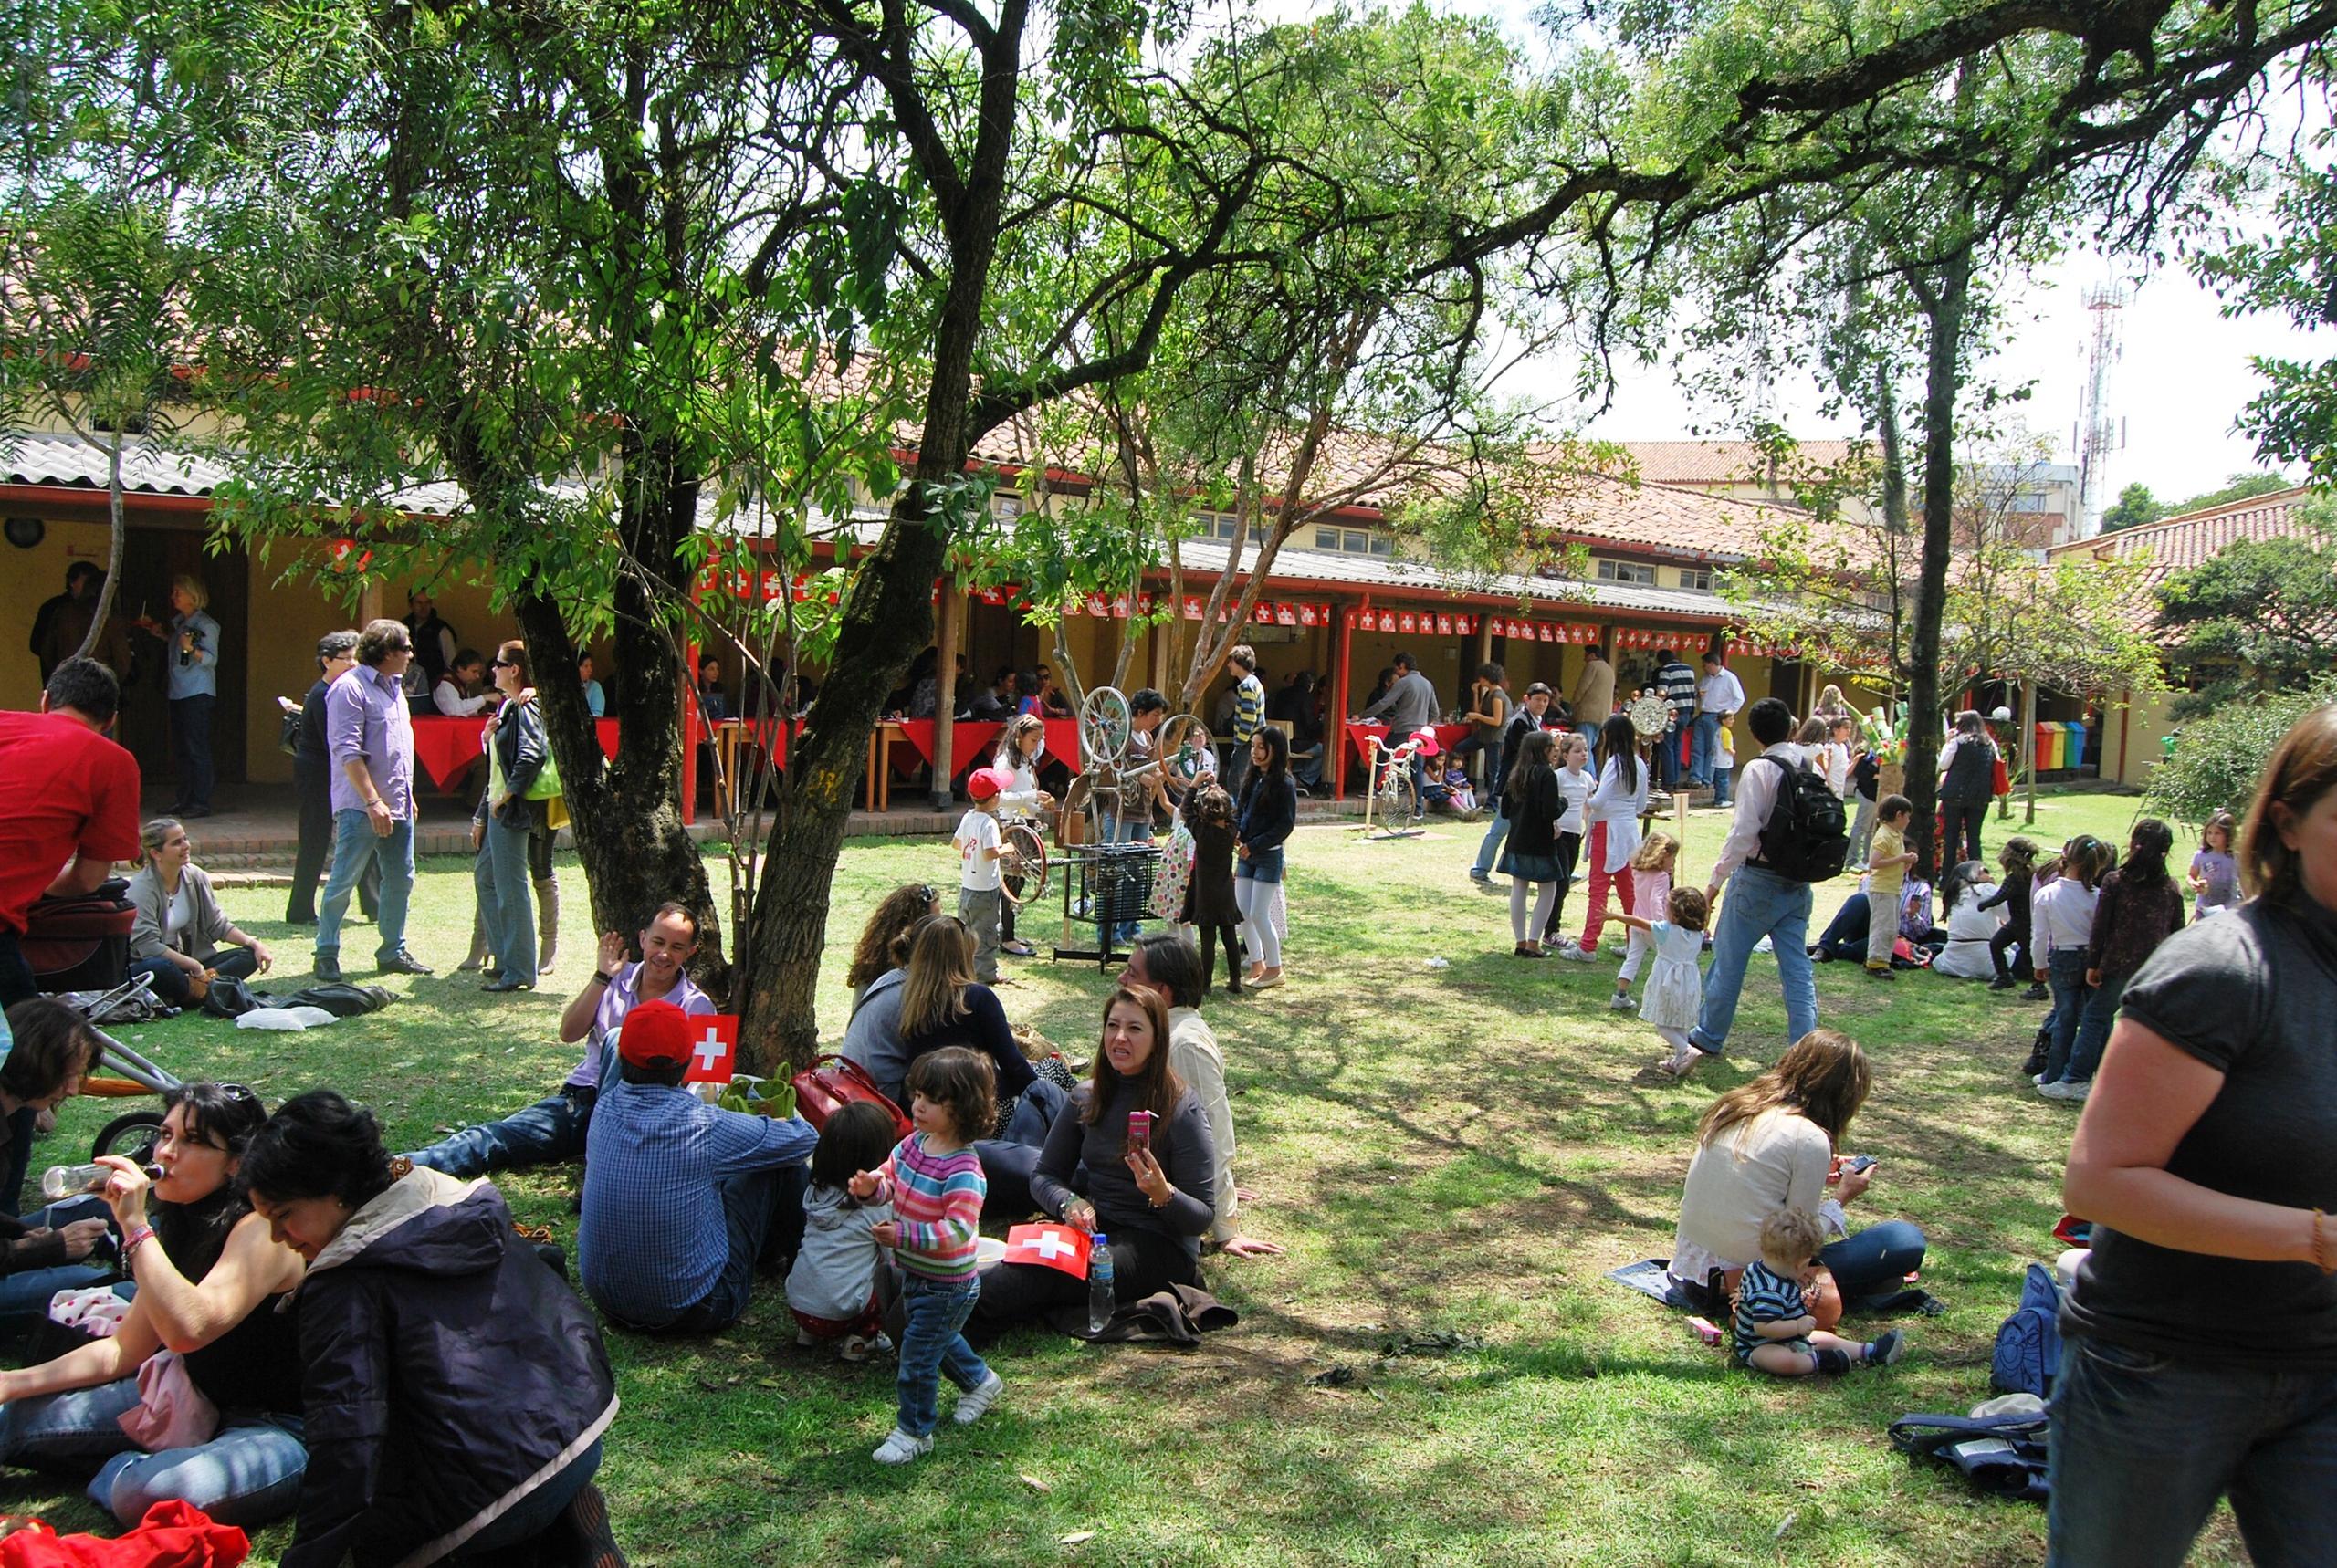 Colegio Helvetia in Bogota, Colombia